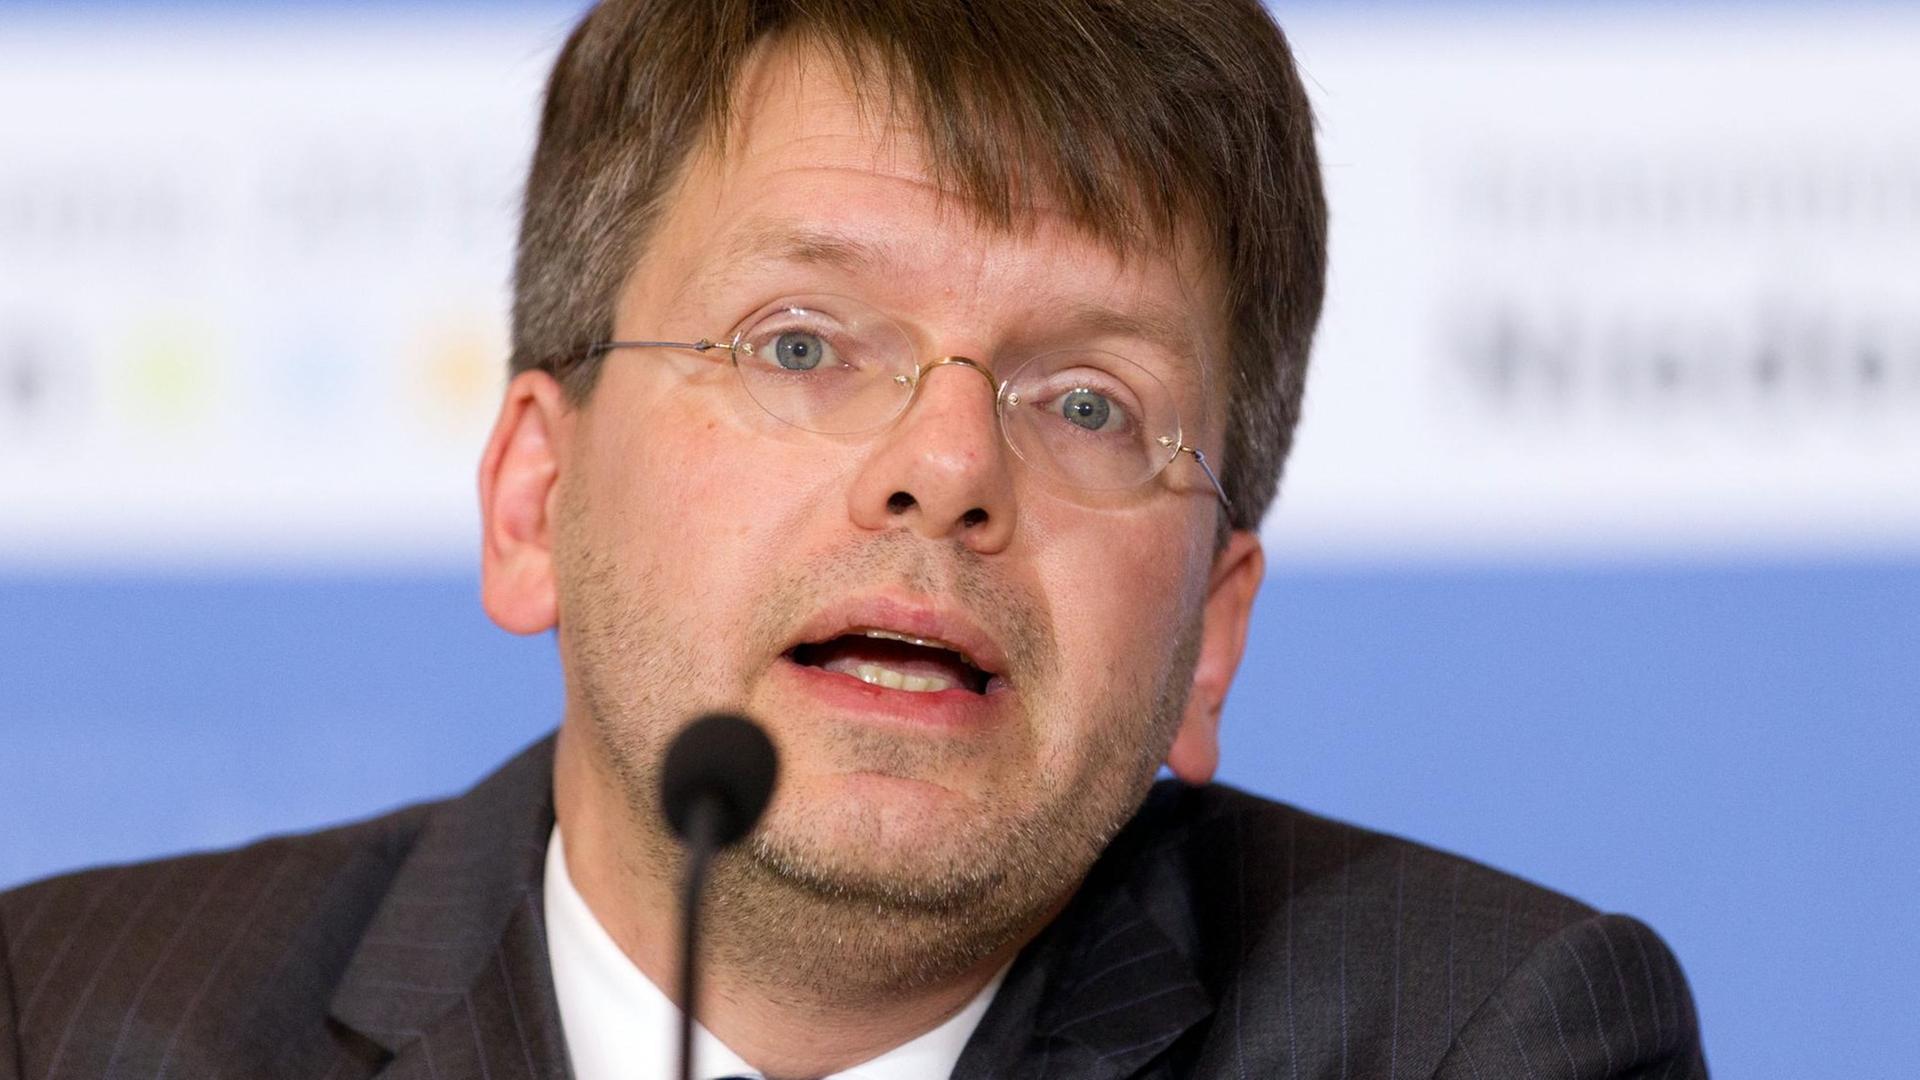 Der Rechtswissenschaftler Christoph Möllers spricht am 04.12.2013 in Osnabrück auf einer Pressekonferenz zum NPD-Verbotsverfahren